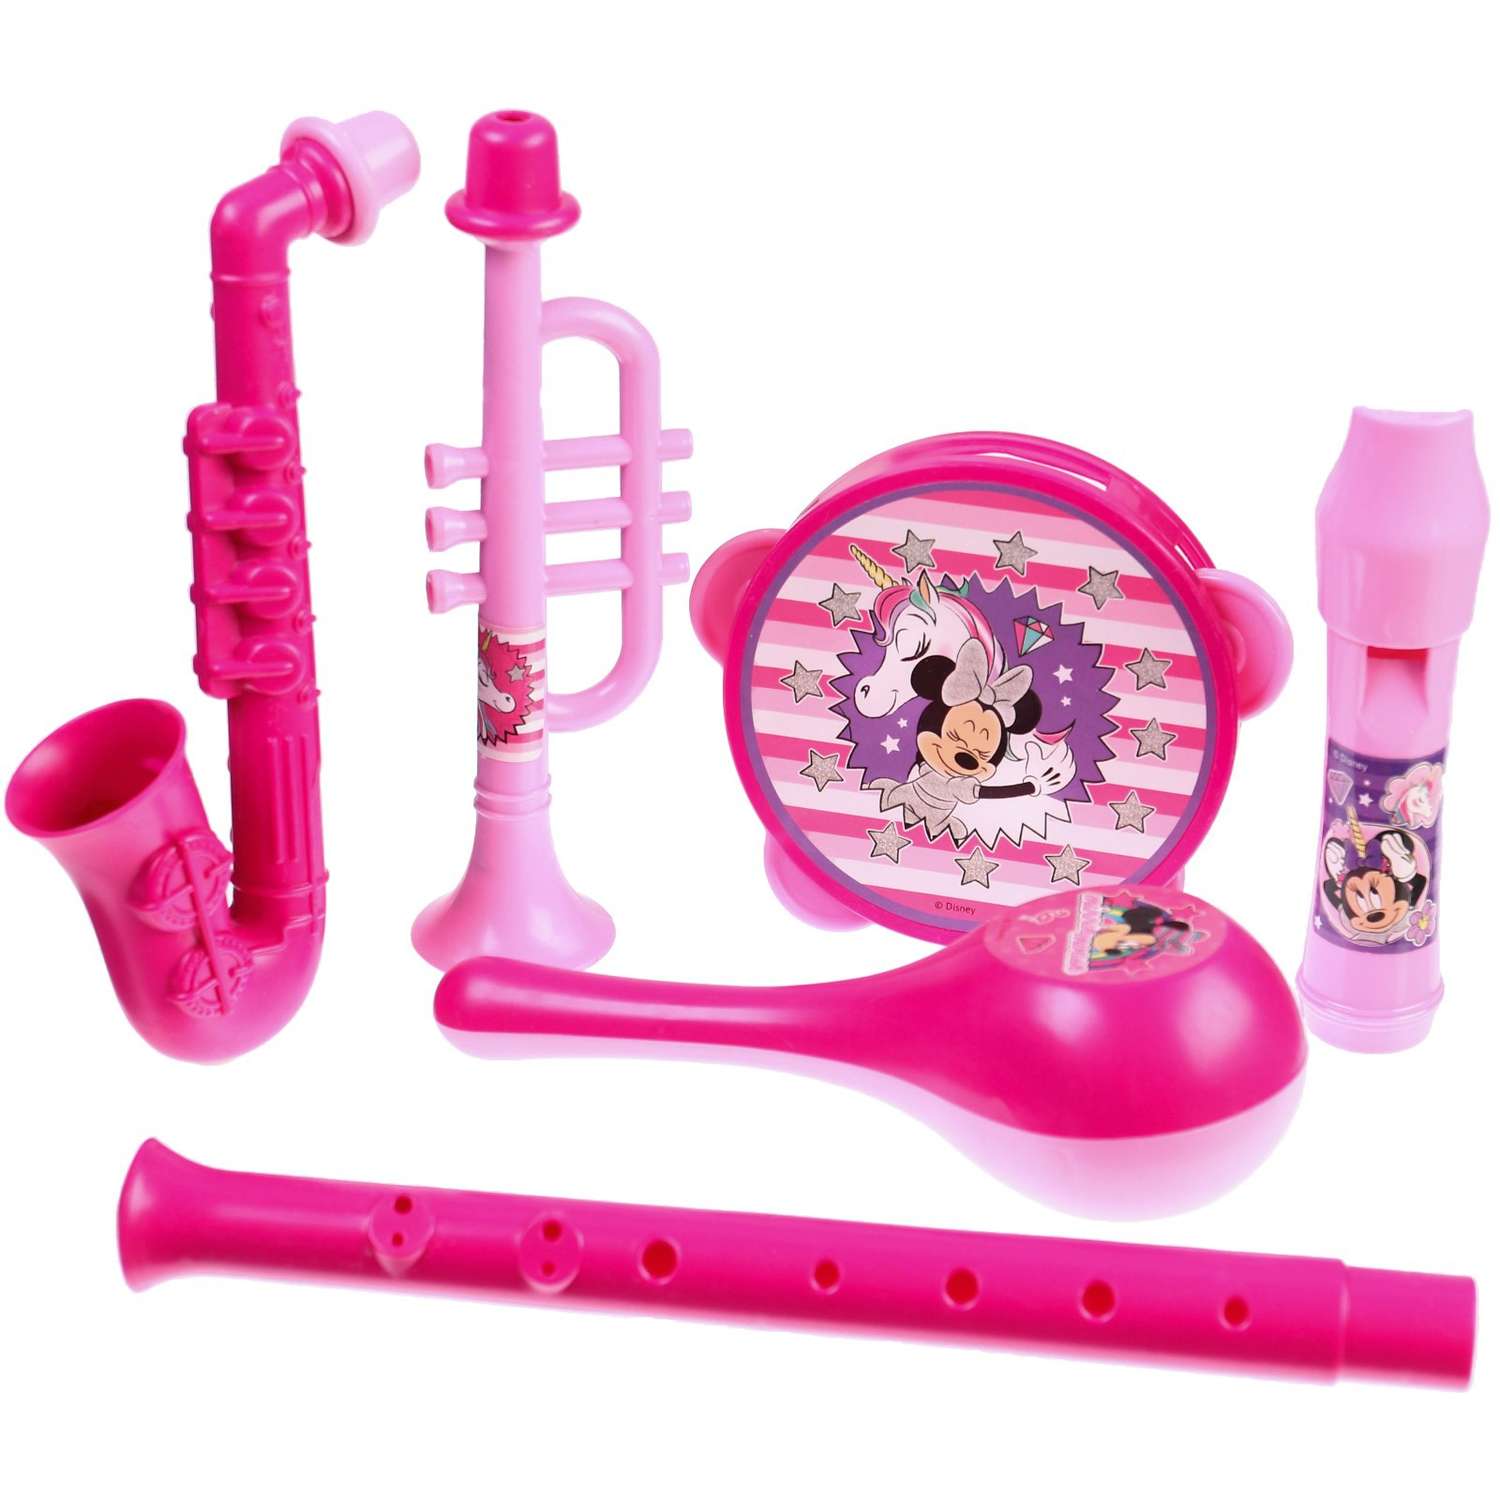 Набор музыкальных инструментов Disney «Минни Маус» 5 предметов цвет розовый - фото 1